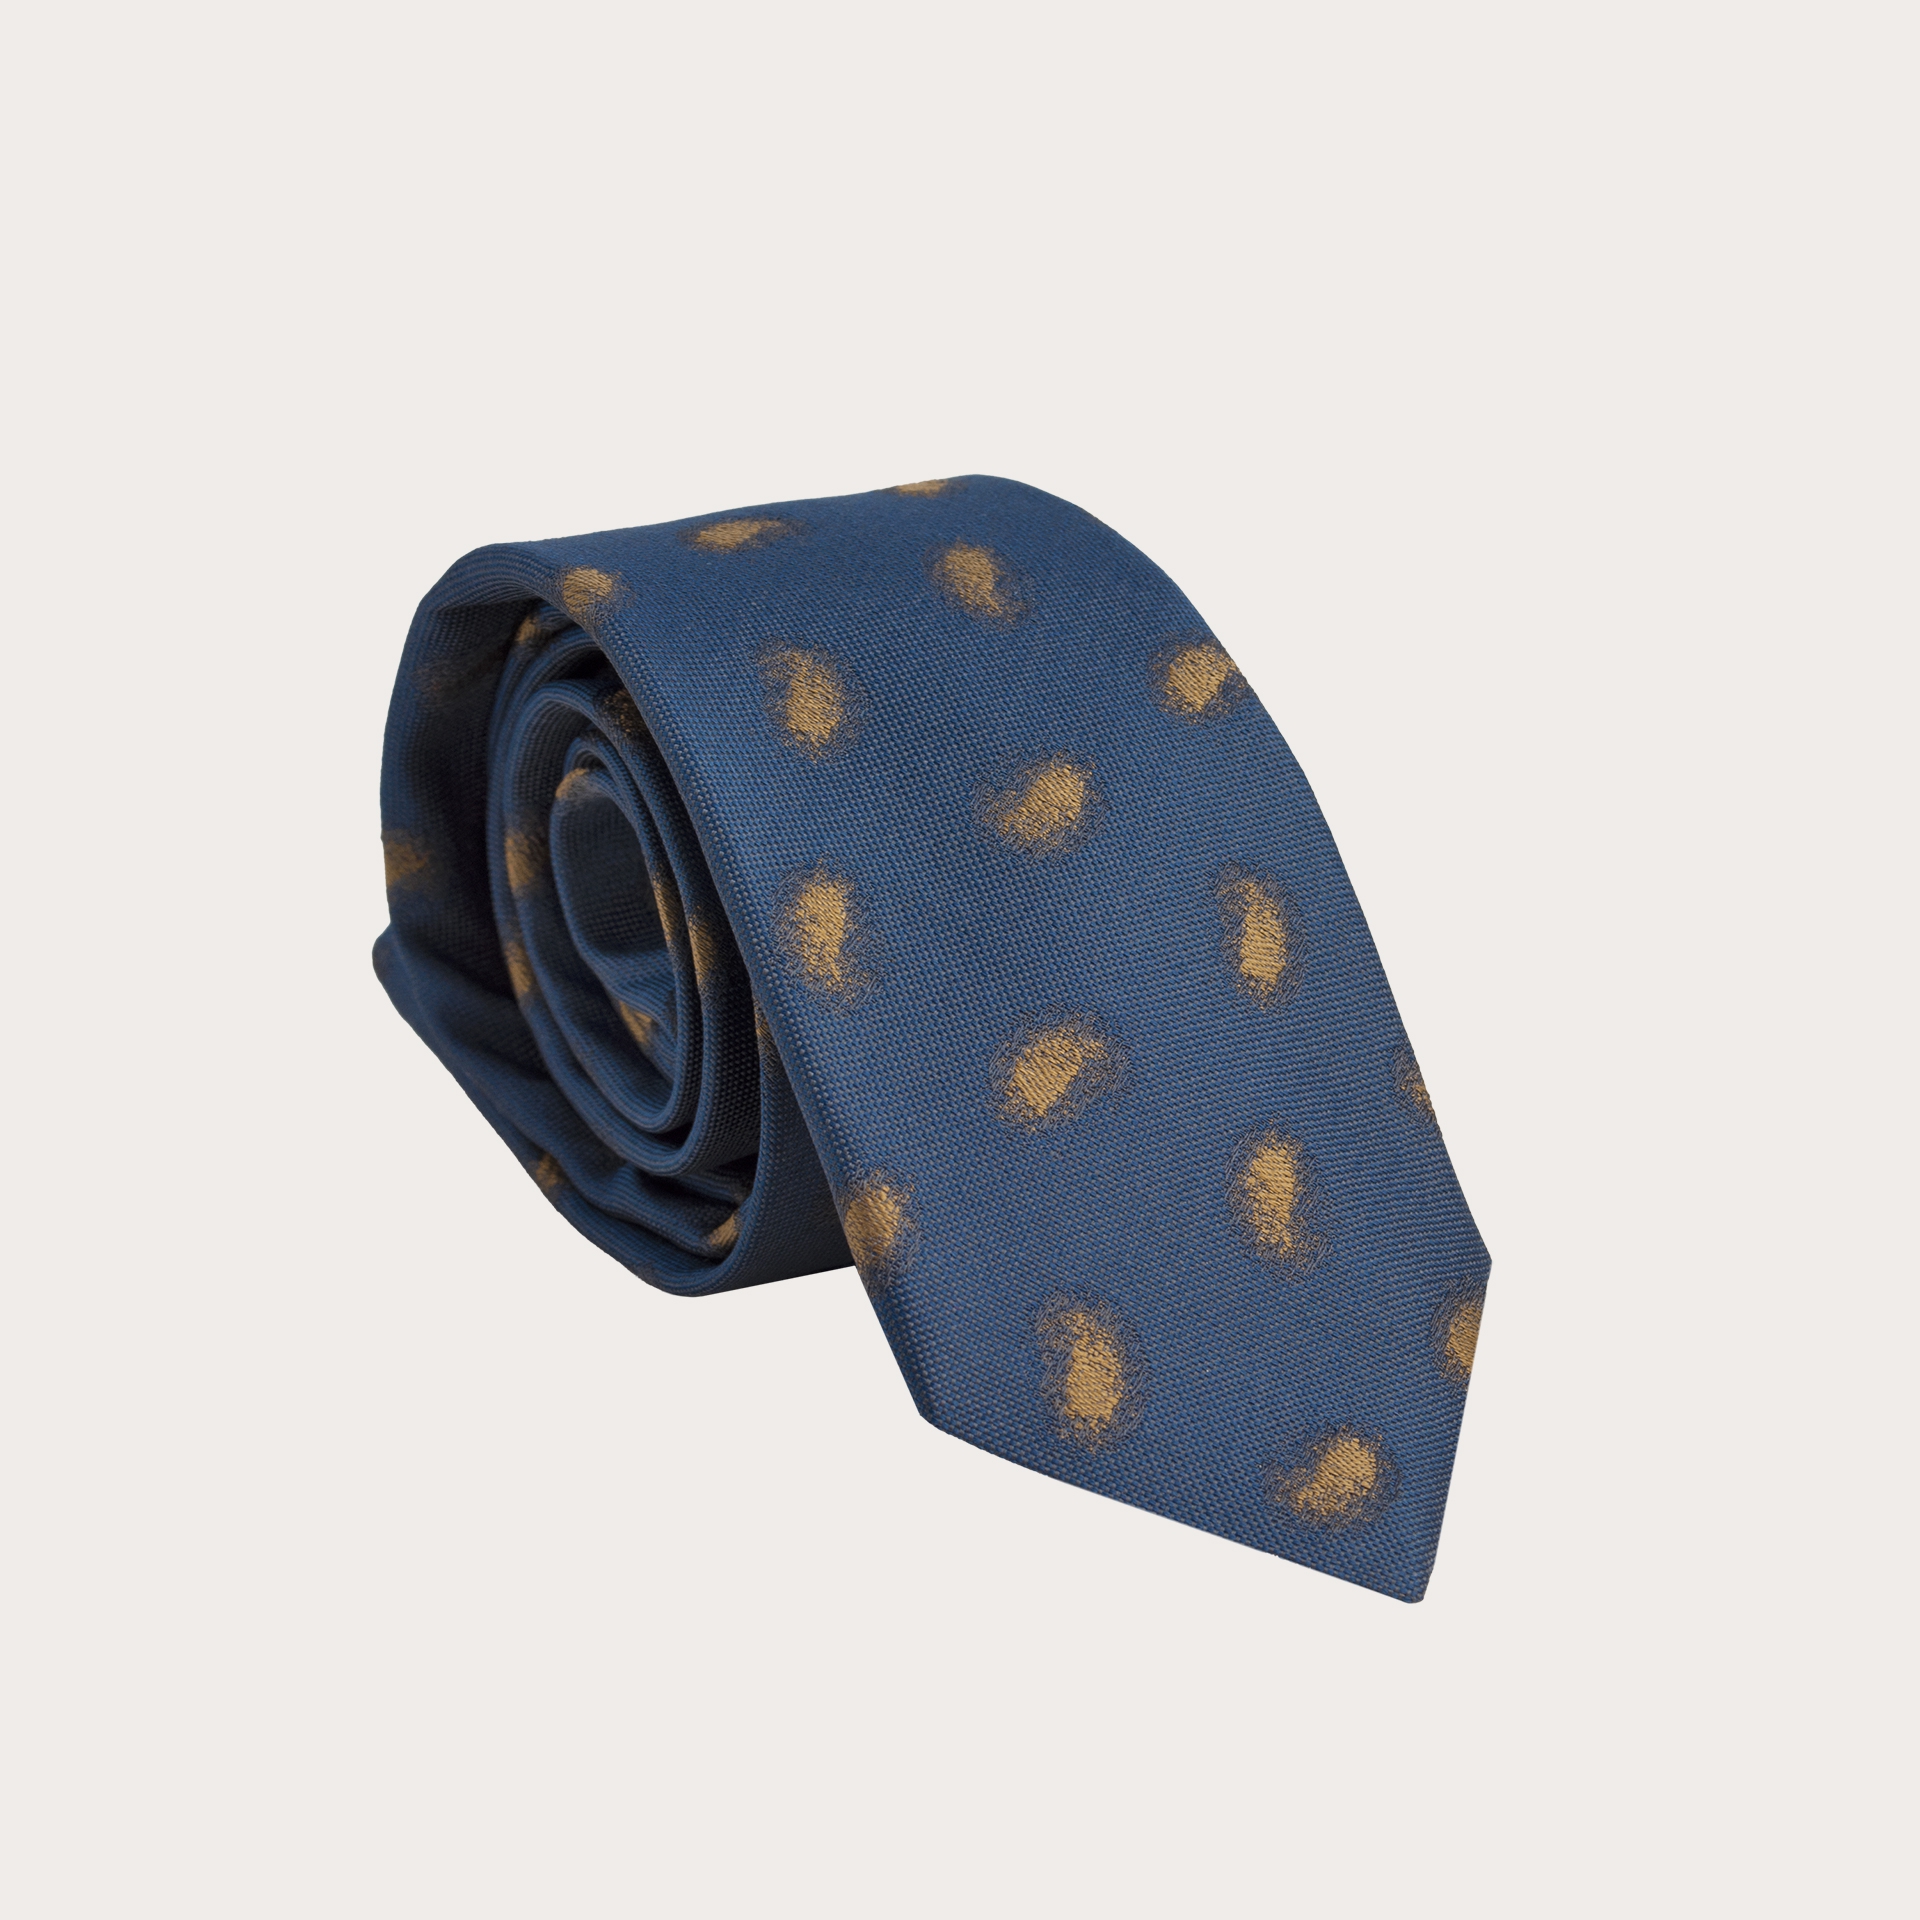 Cravate en soie, bleu avec motif cachemire délavé